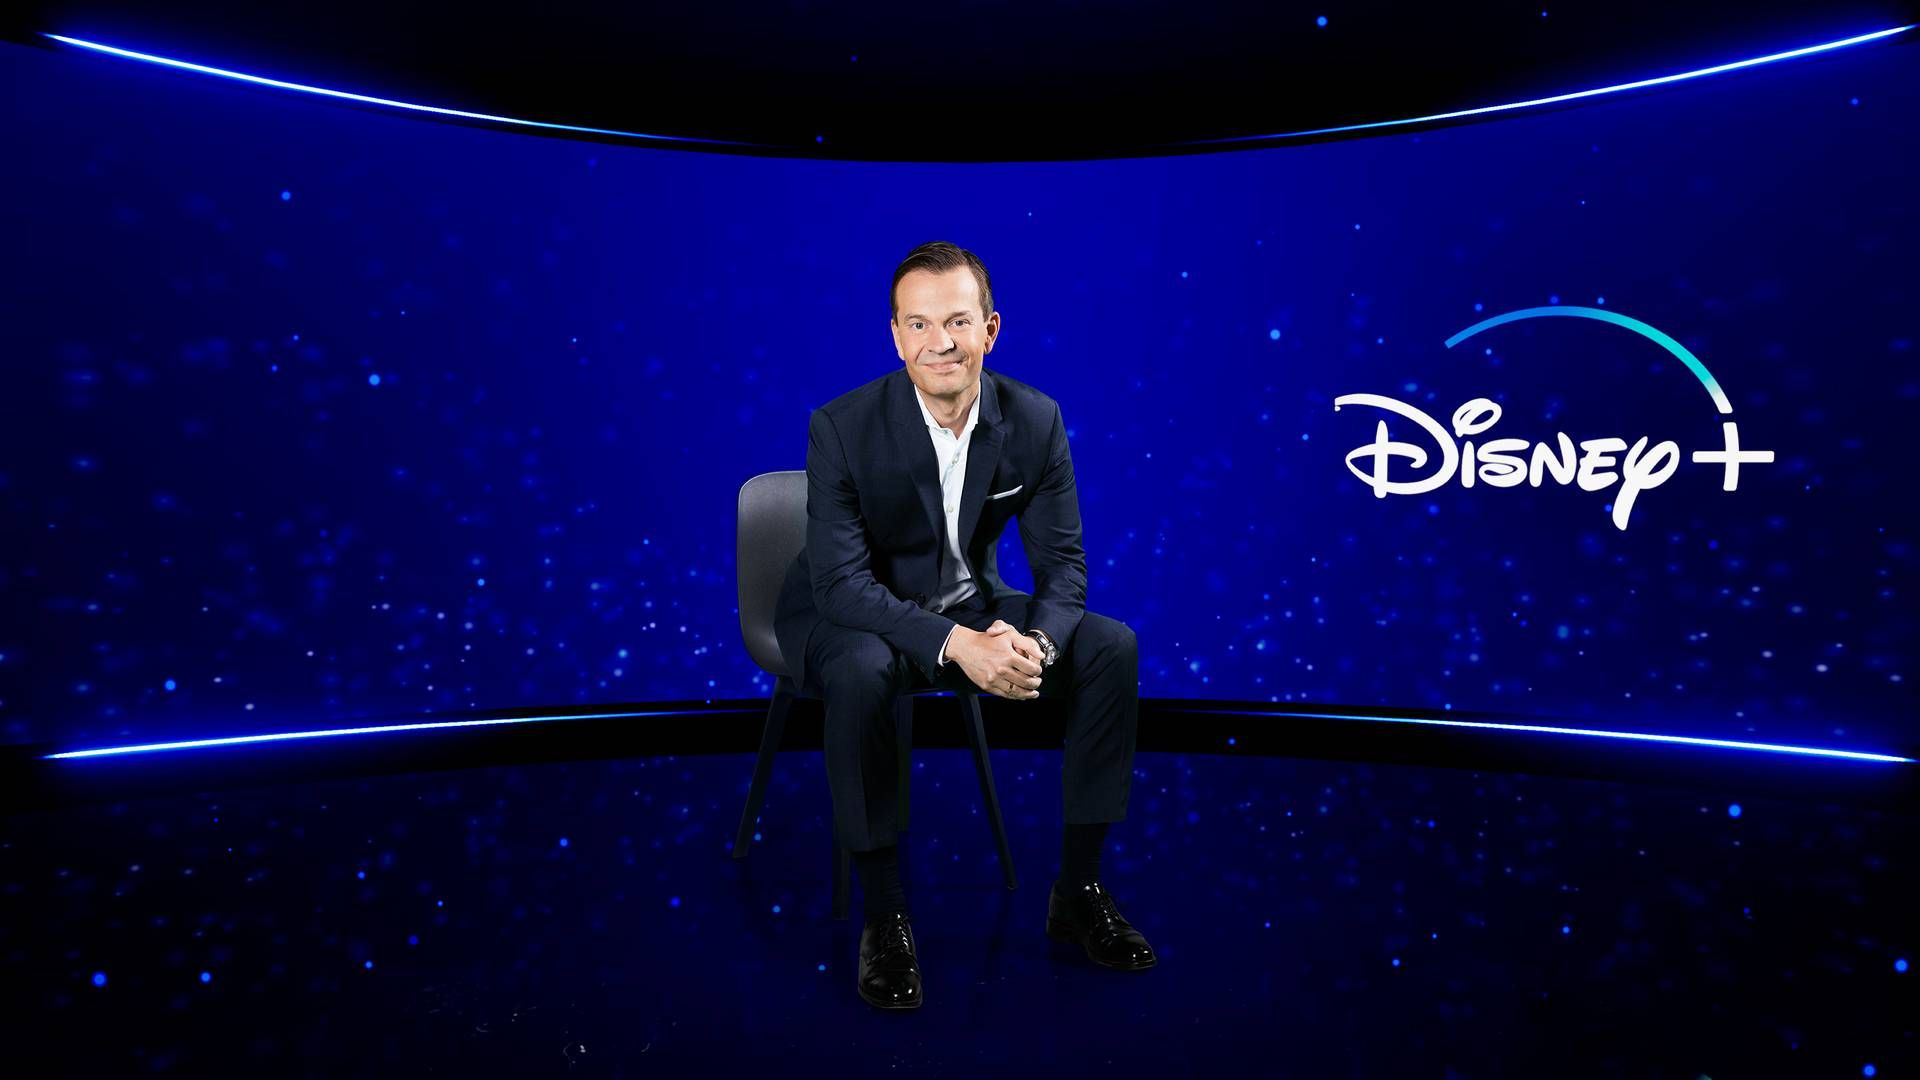 Hans van Rijn og Disney+ er ankommet til det danske annoncemarked. Det kan indvarsle en ny konkurrencesituation, der udvikler sig de kommende år, spår to mediebureauer. | Foto: PR/Walt Disney Company